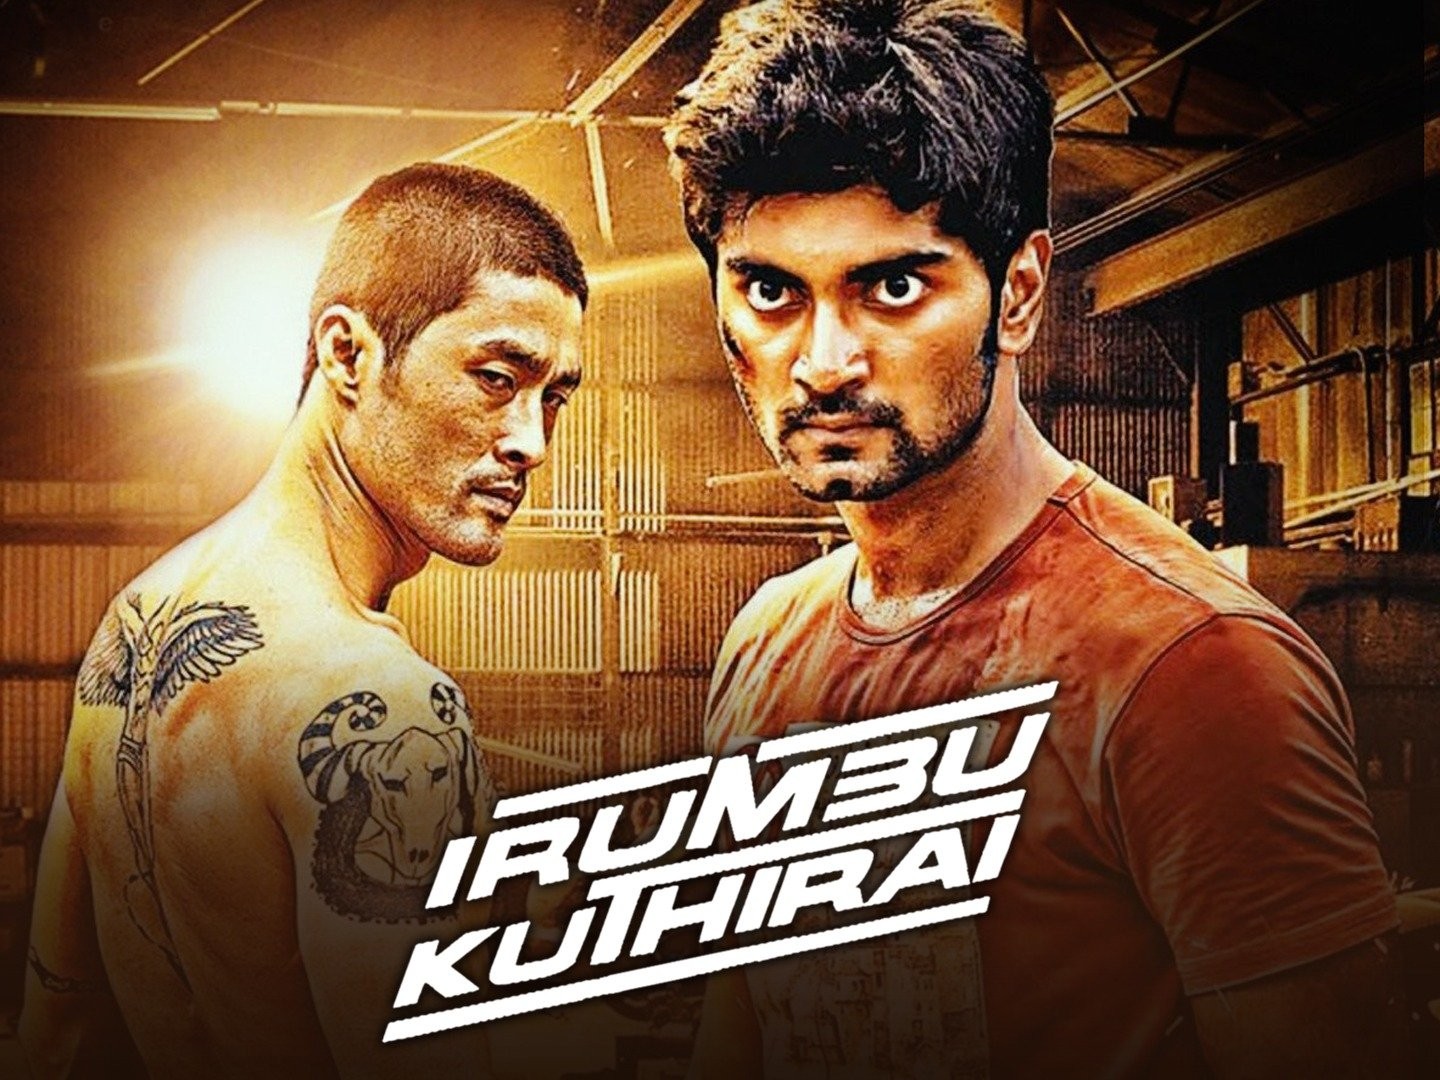 Irumbu kuthirai full movie download utorrent free